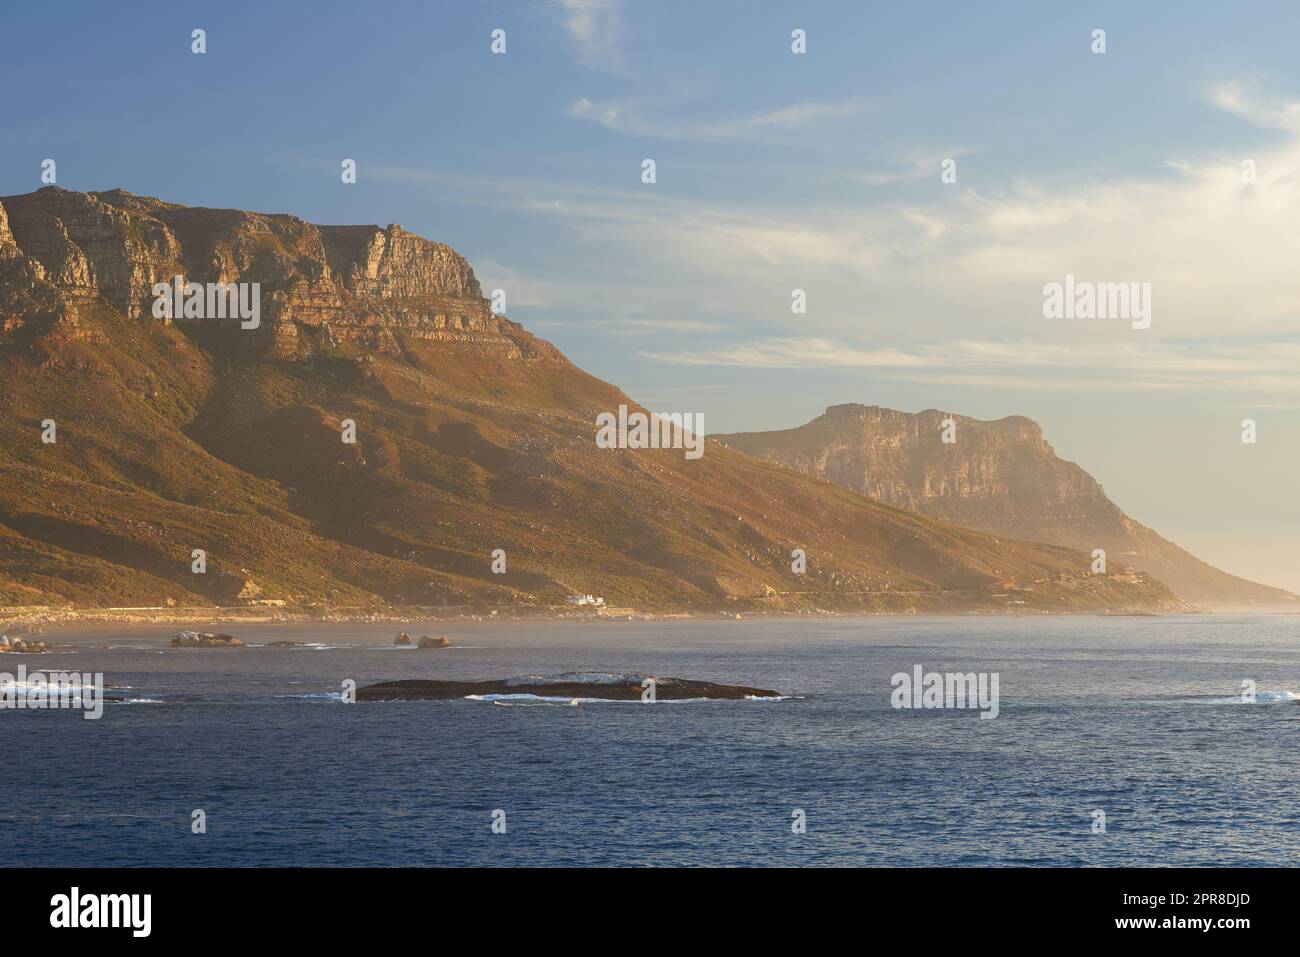 Blick auf Landschaft, Meer, Strand und Berge der Twelve Apostles in Kapstadt, Südafrika. Ruhiger Ozean mit blauem Himmel und Kopierraum am Ufer berühmter Wander-, Reise- oder Tourismusziele Stockfoto